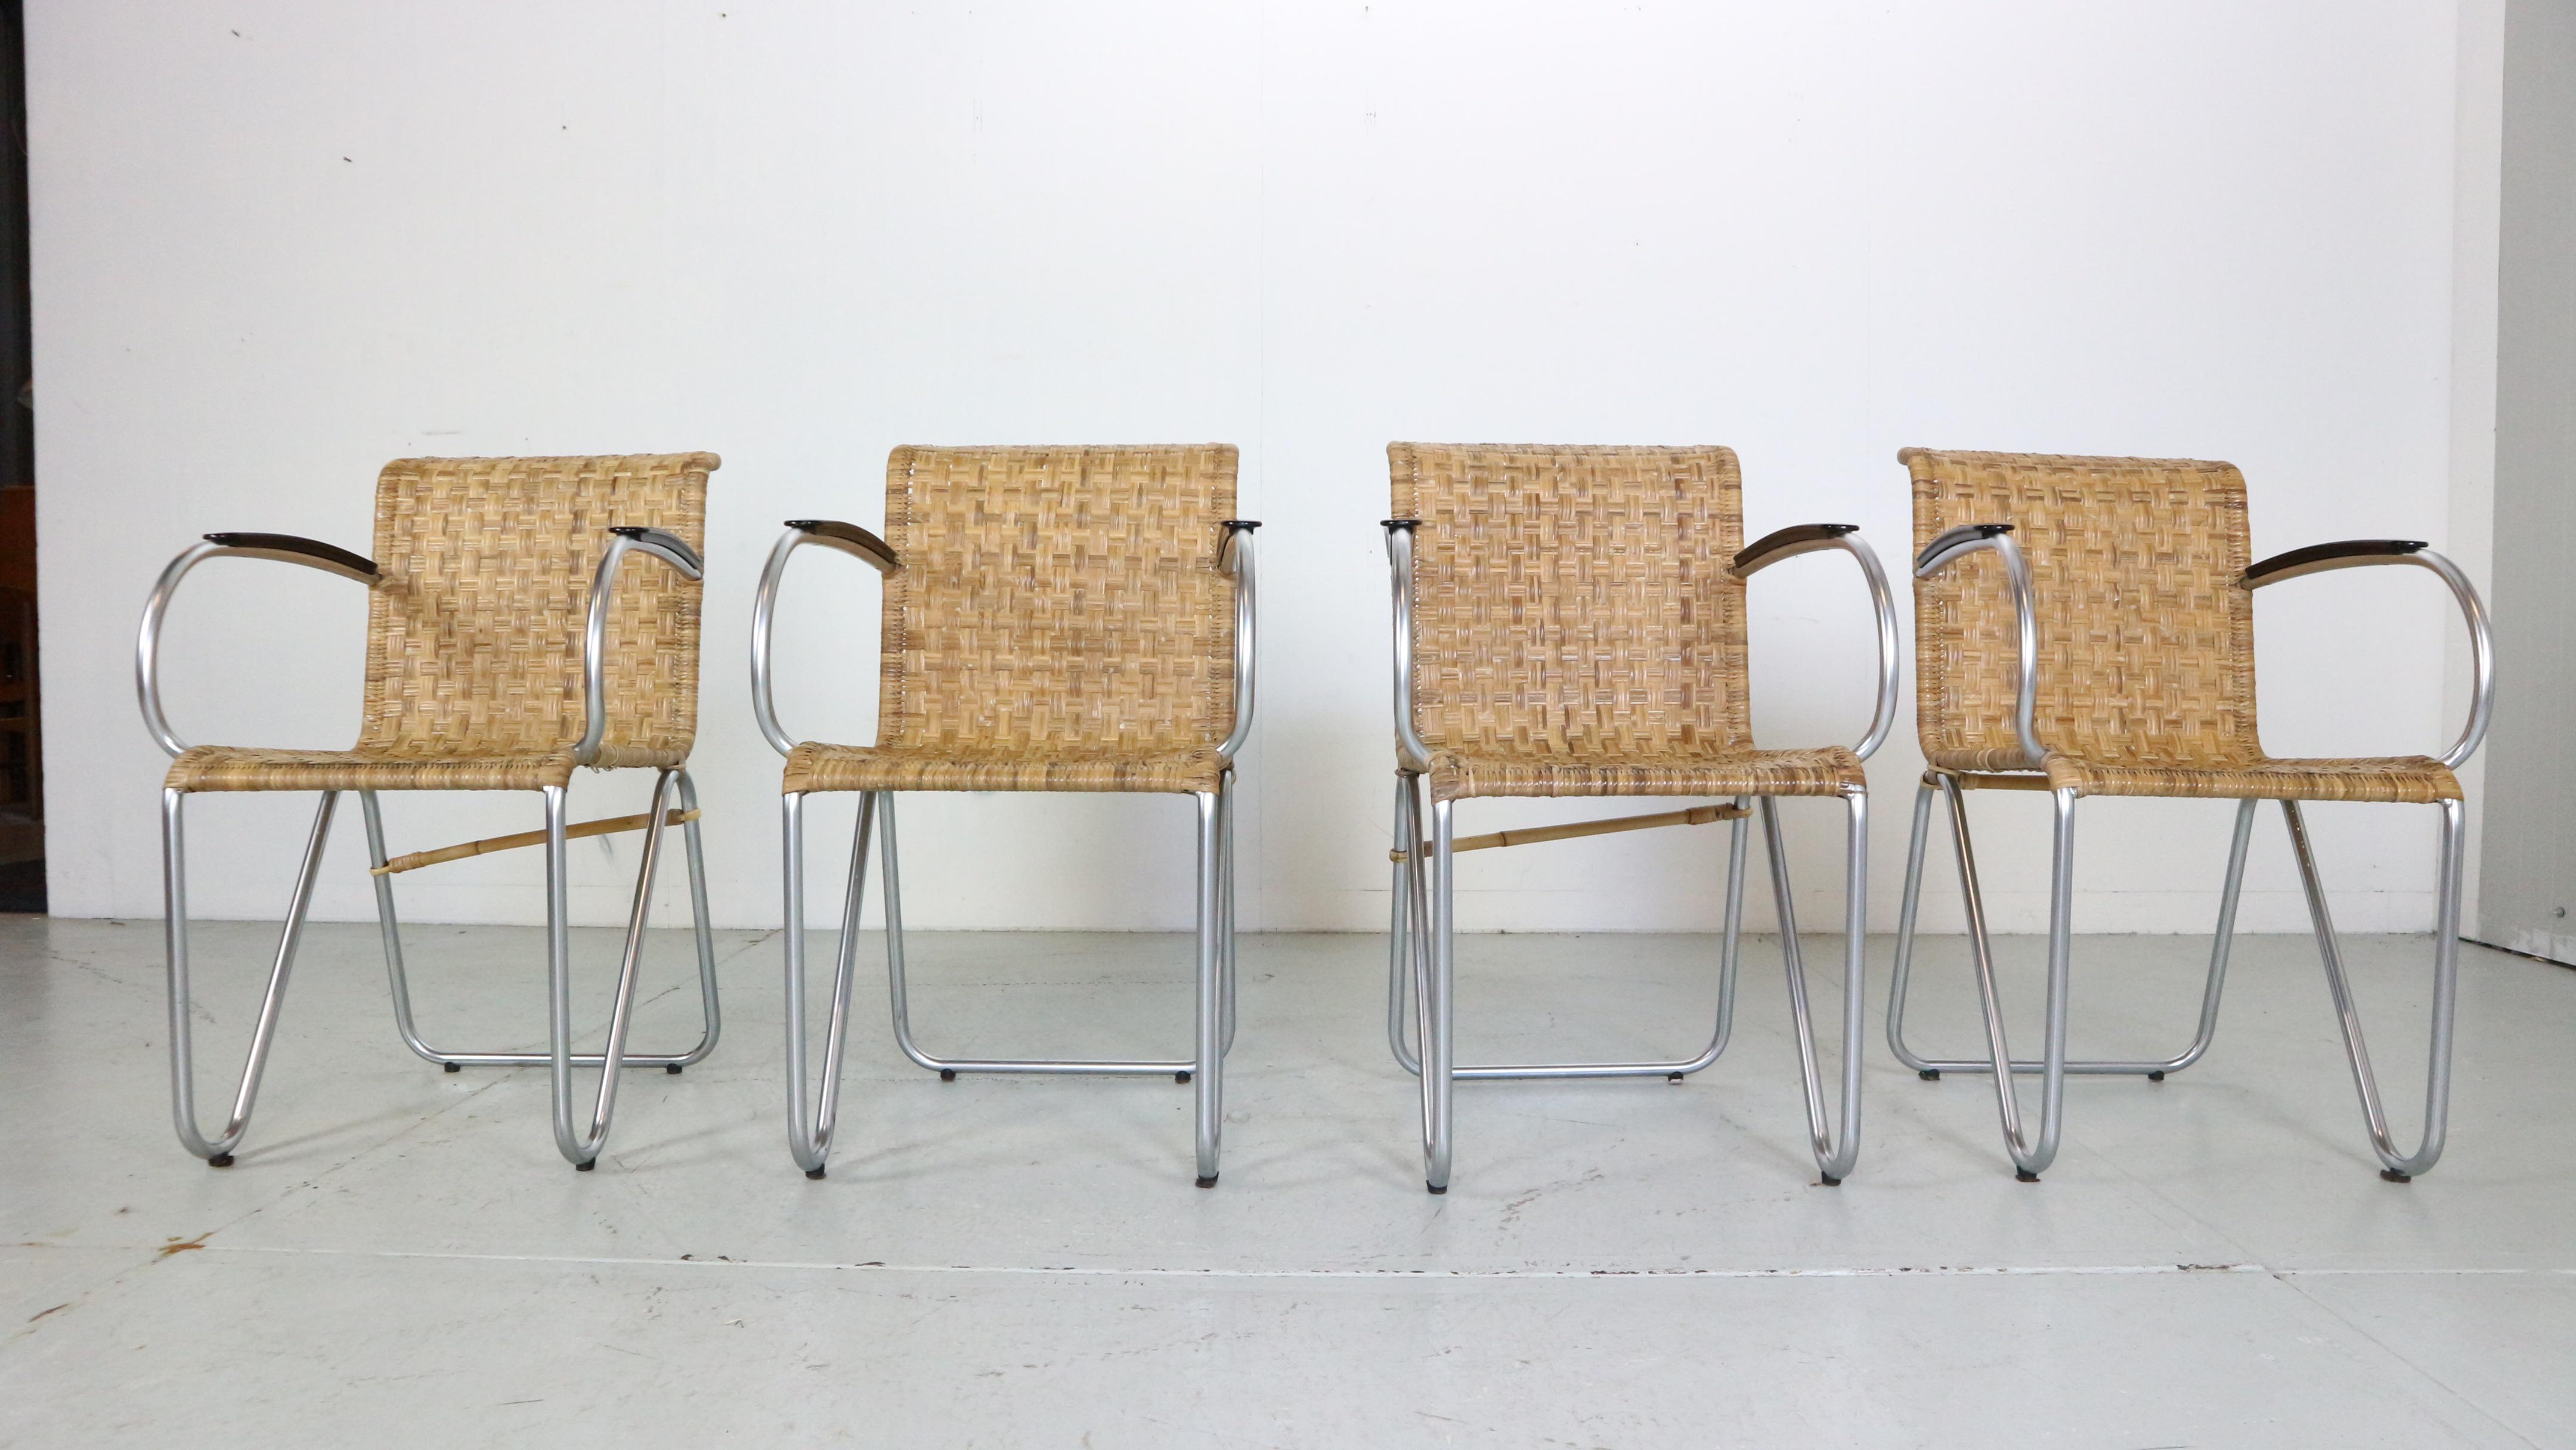 Ensemble vintage de 4 fauteuils de la période moderne du milieu du siècle, conçu par Willem H. Gispen pour Gispen dans les années 1930.

102 Chaises à tube diagonal
Les chaises sont composées d'assises en rotin d'osier tressé et d'armatures en acier